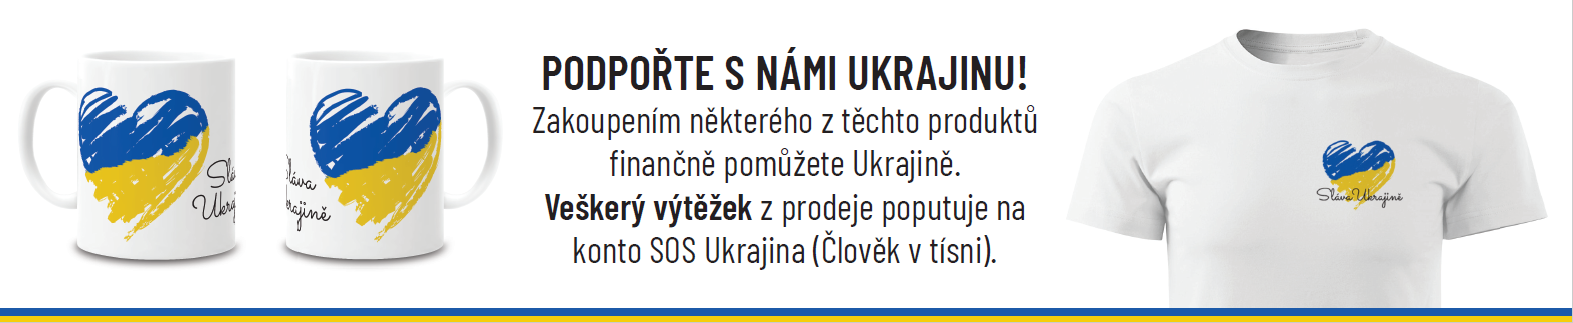 Podpořte s námi Ukrajinu! Zakoupením některého z těchto produktů  finančně pomůžete Ukrajině.  Veškerý výtěžek z prodeje poputuje na konto SOS Ukrajina (Člověk v tísni). 